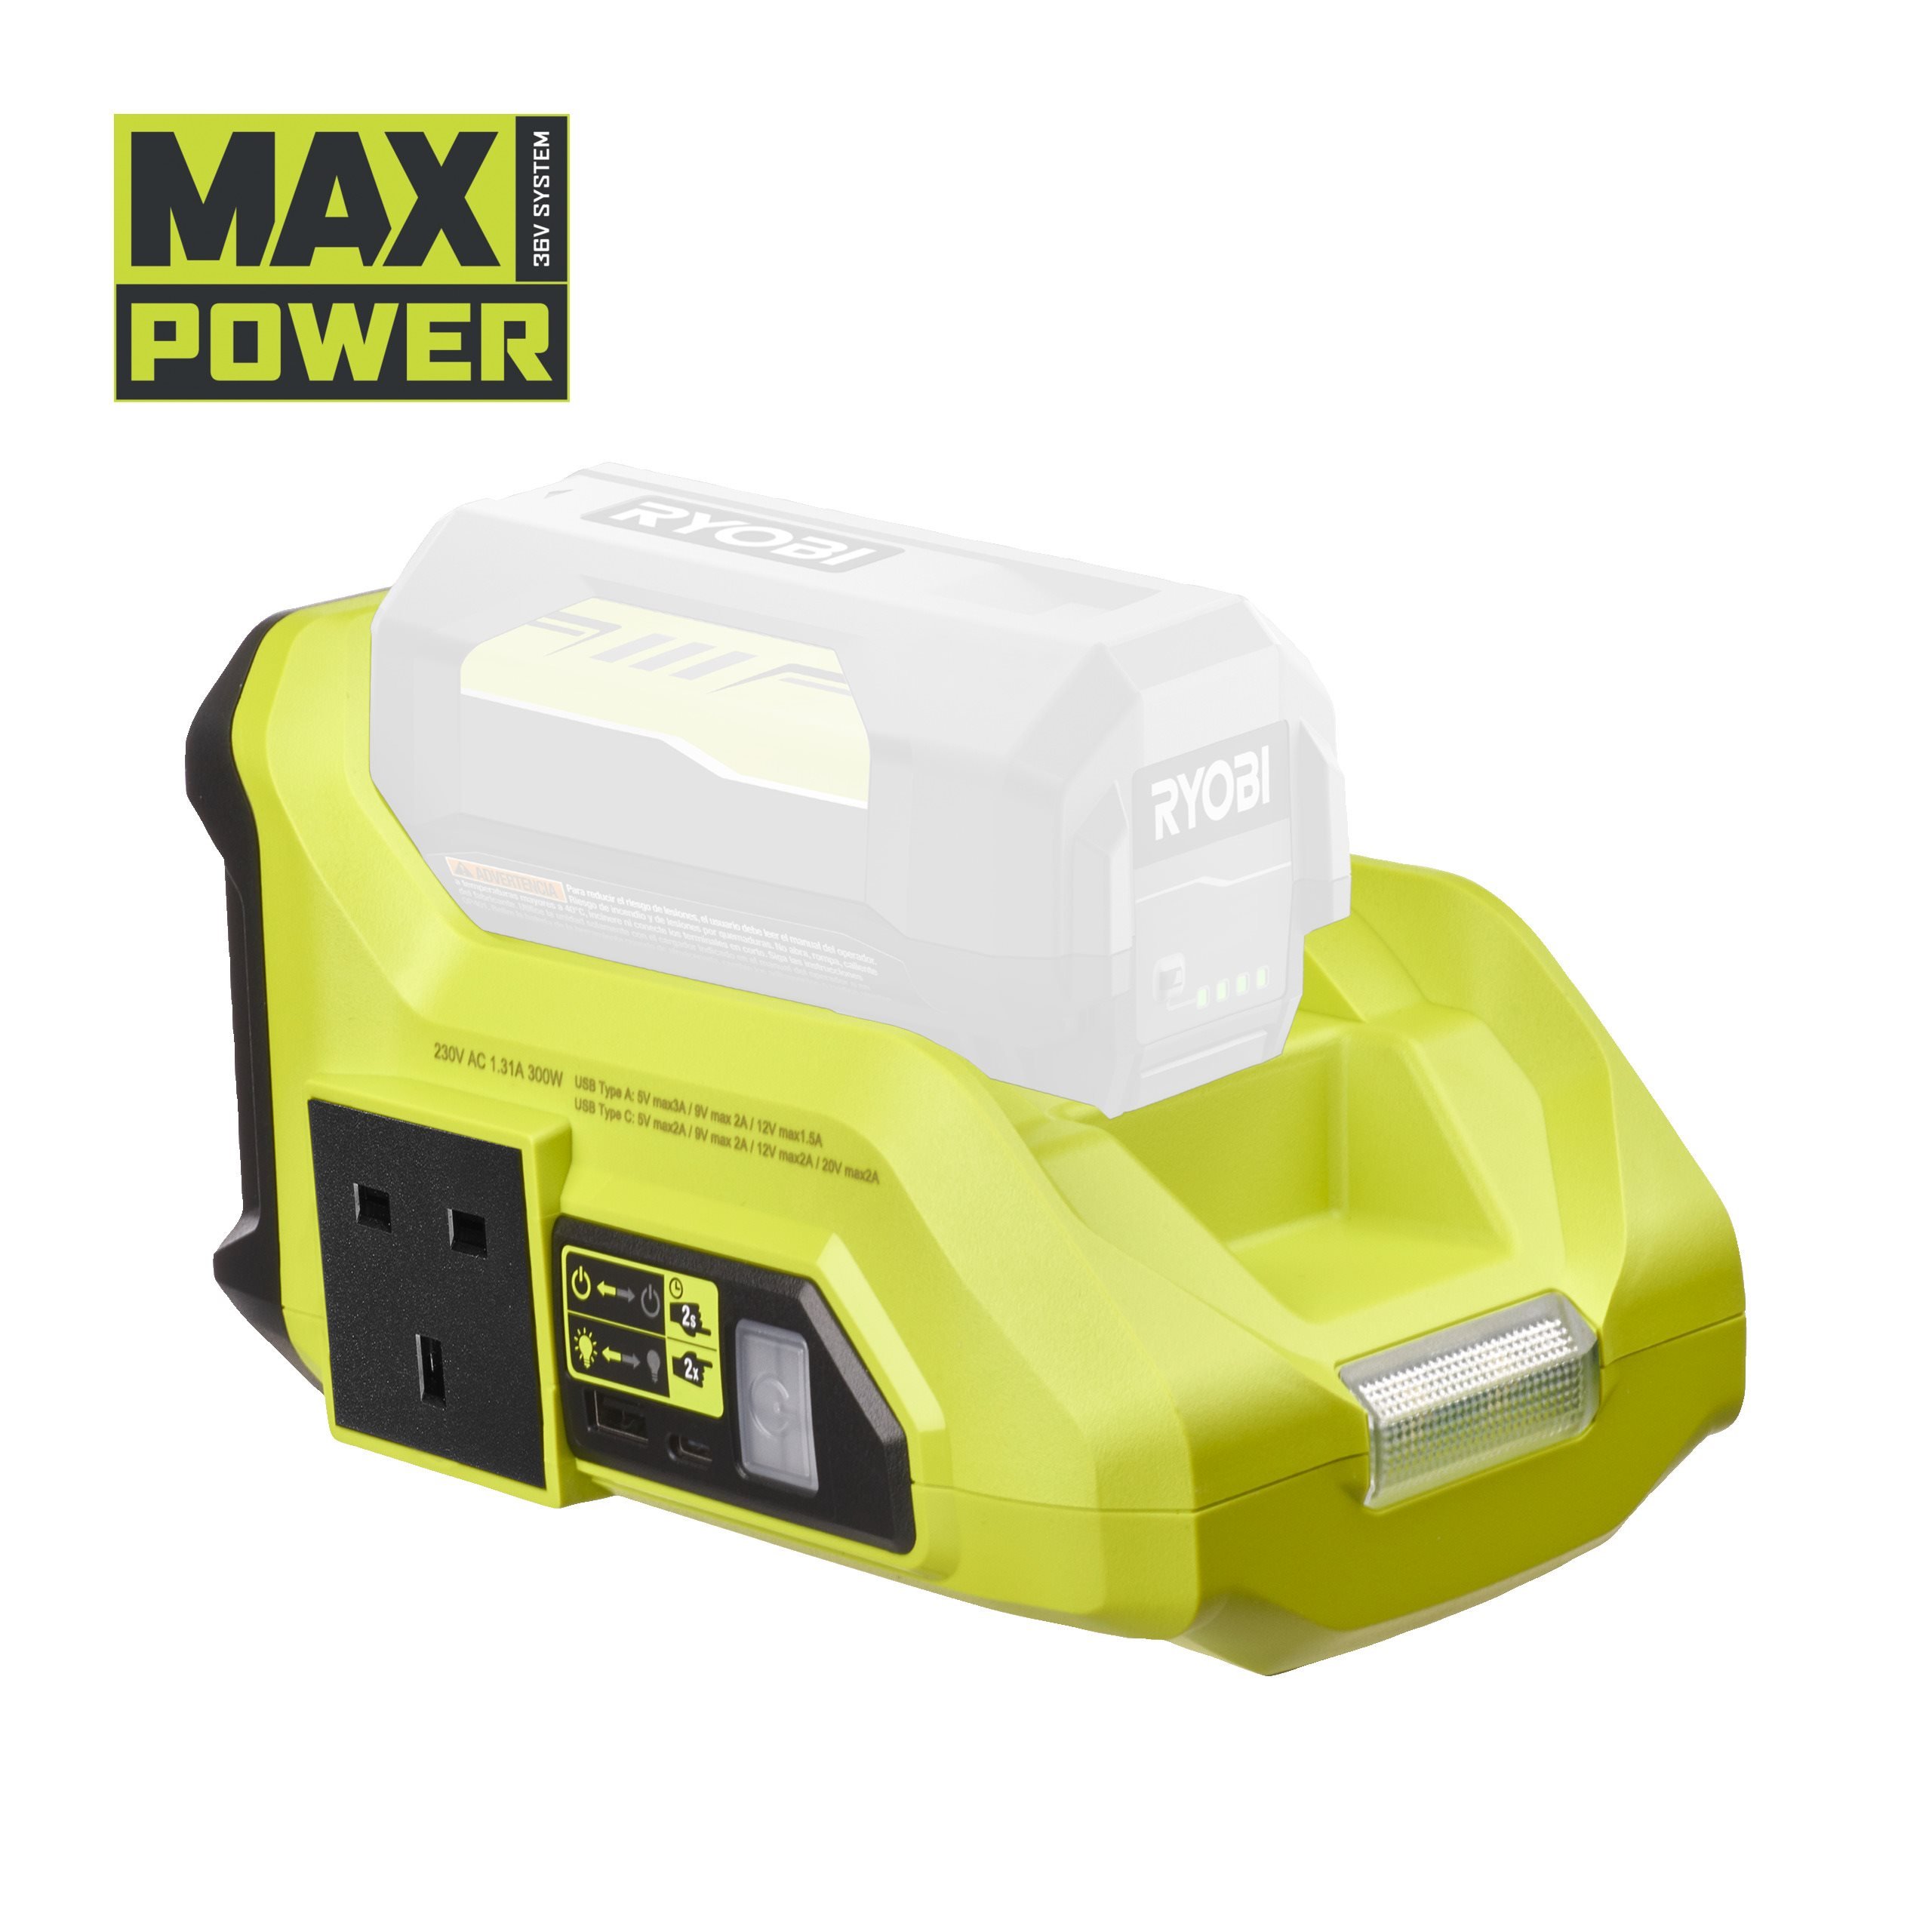 36 V MAX POWER Akku-Wechselrichter, Kontinuierliche Wattage 300 W, ohne Akku und Ladegerät